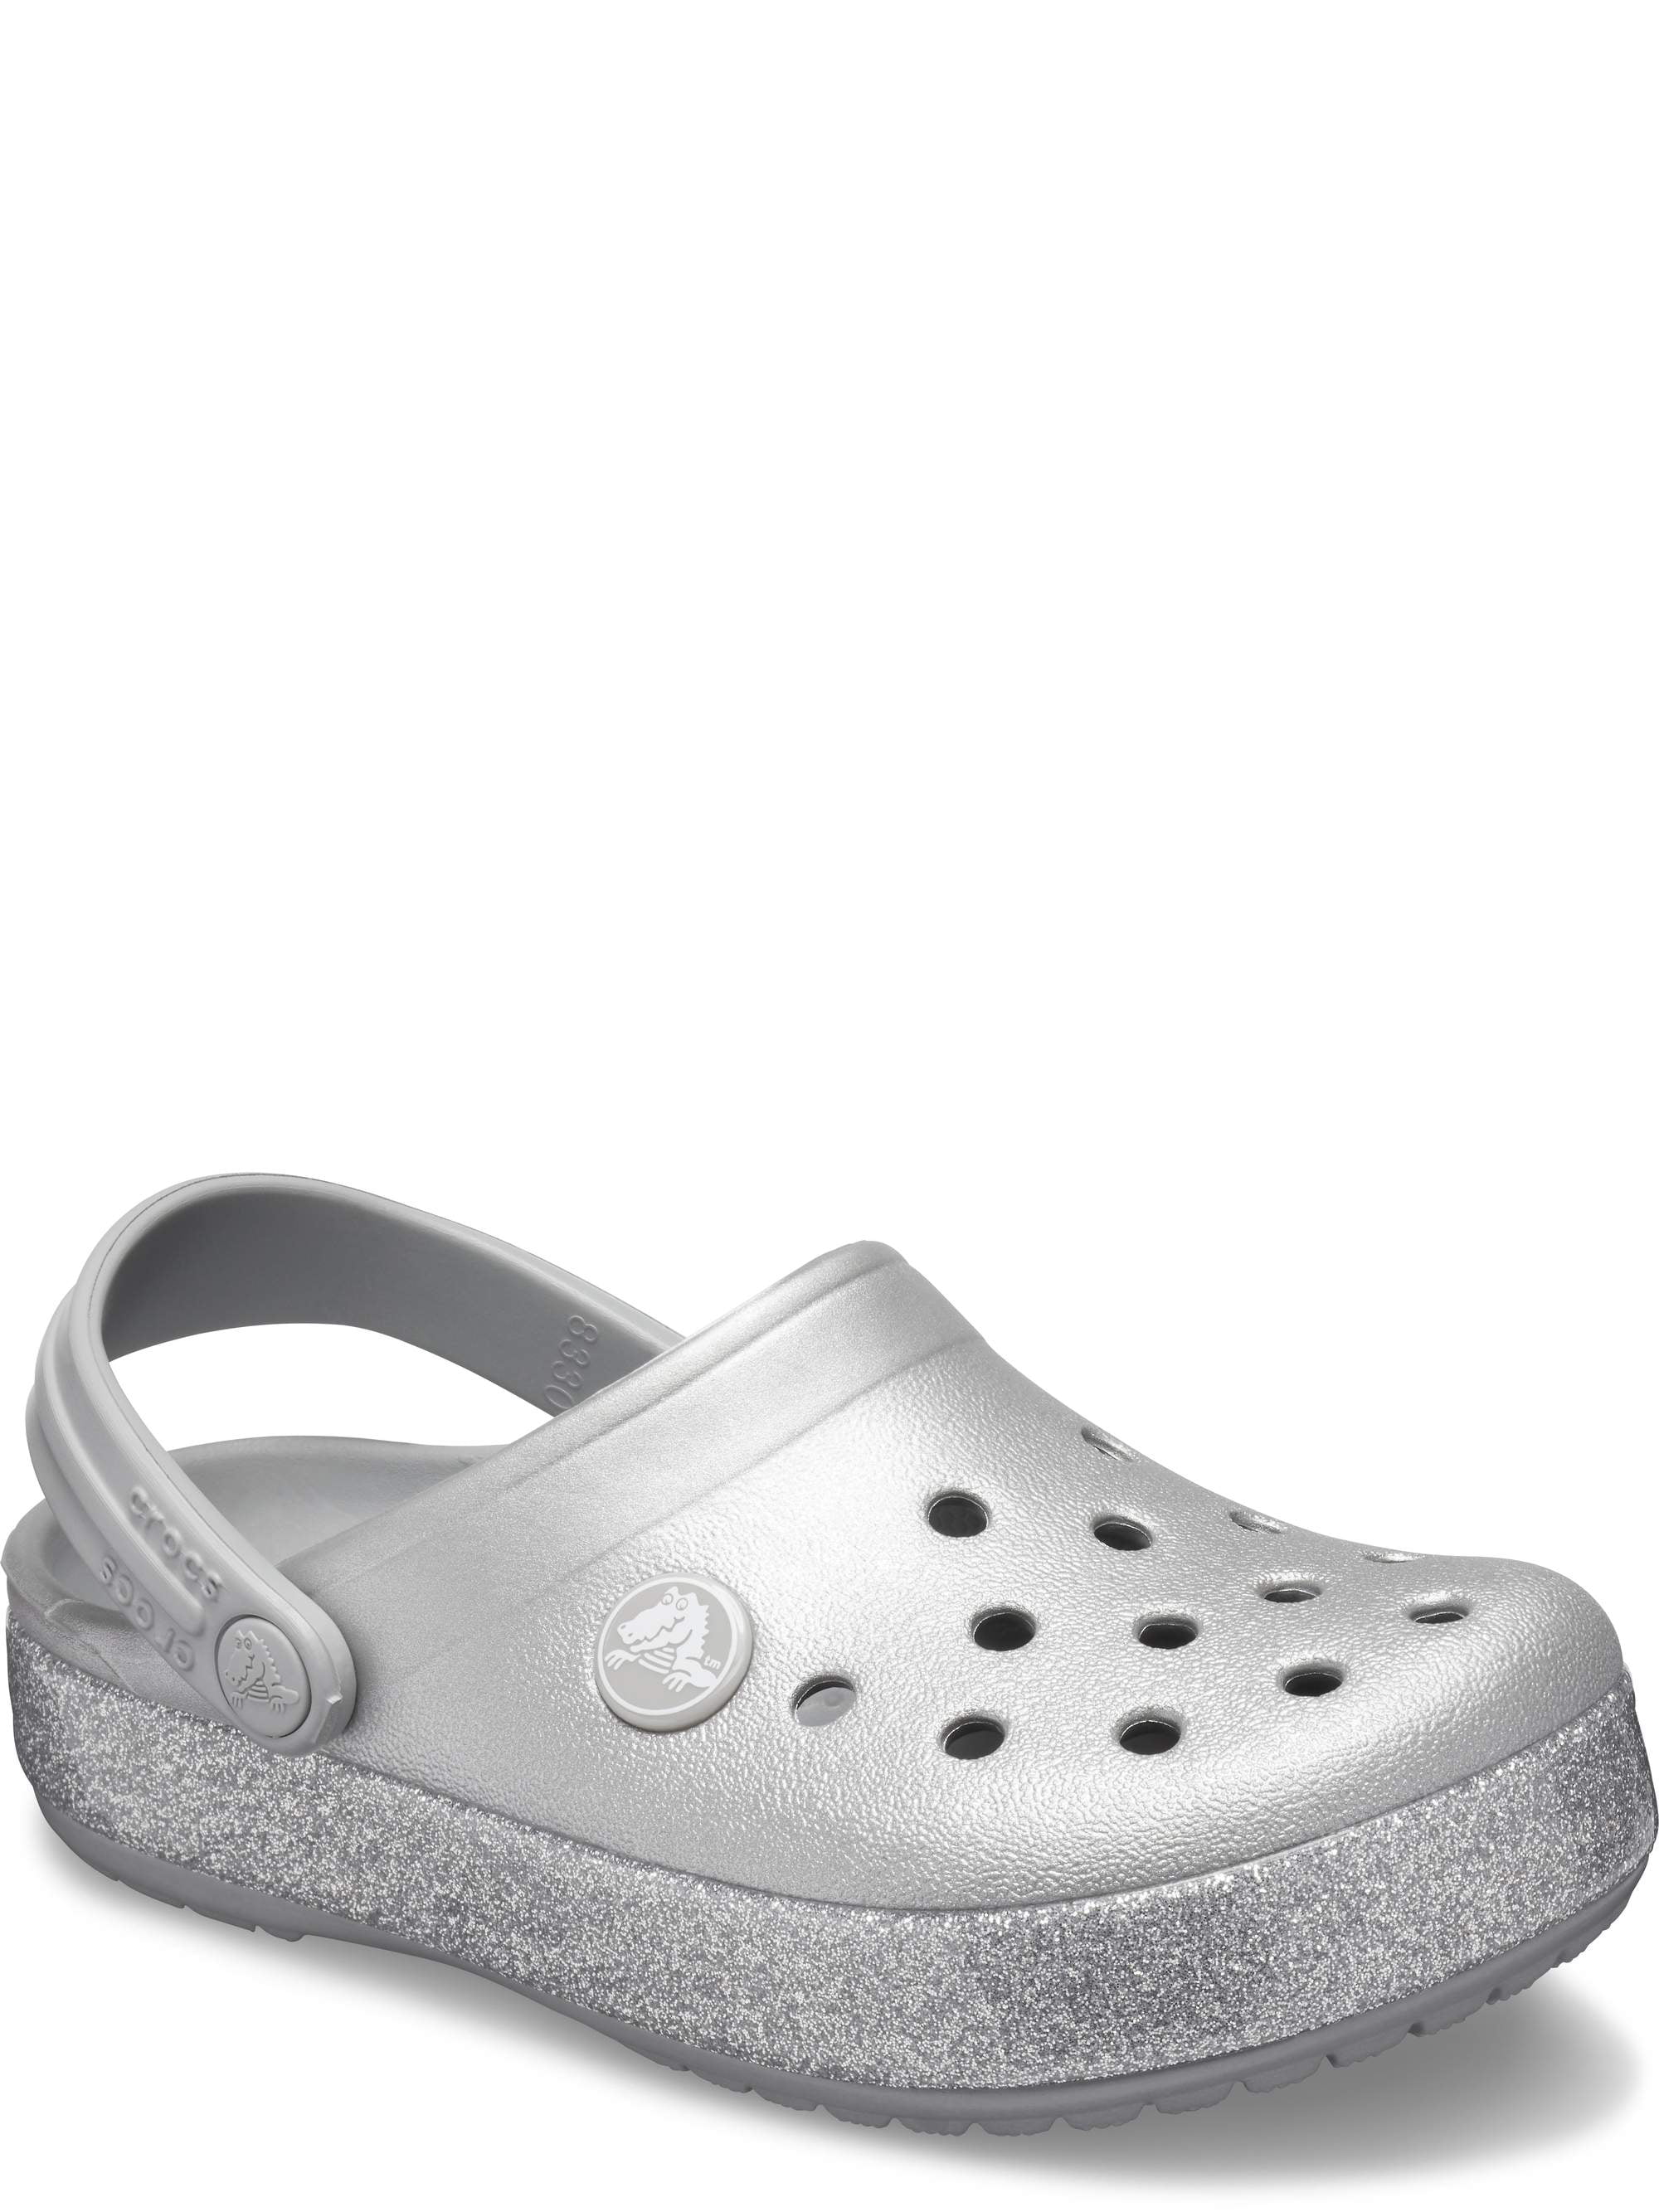 Crocs - Crocs Child Crocband Glitter 